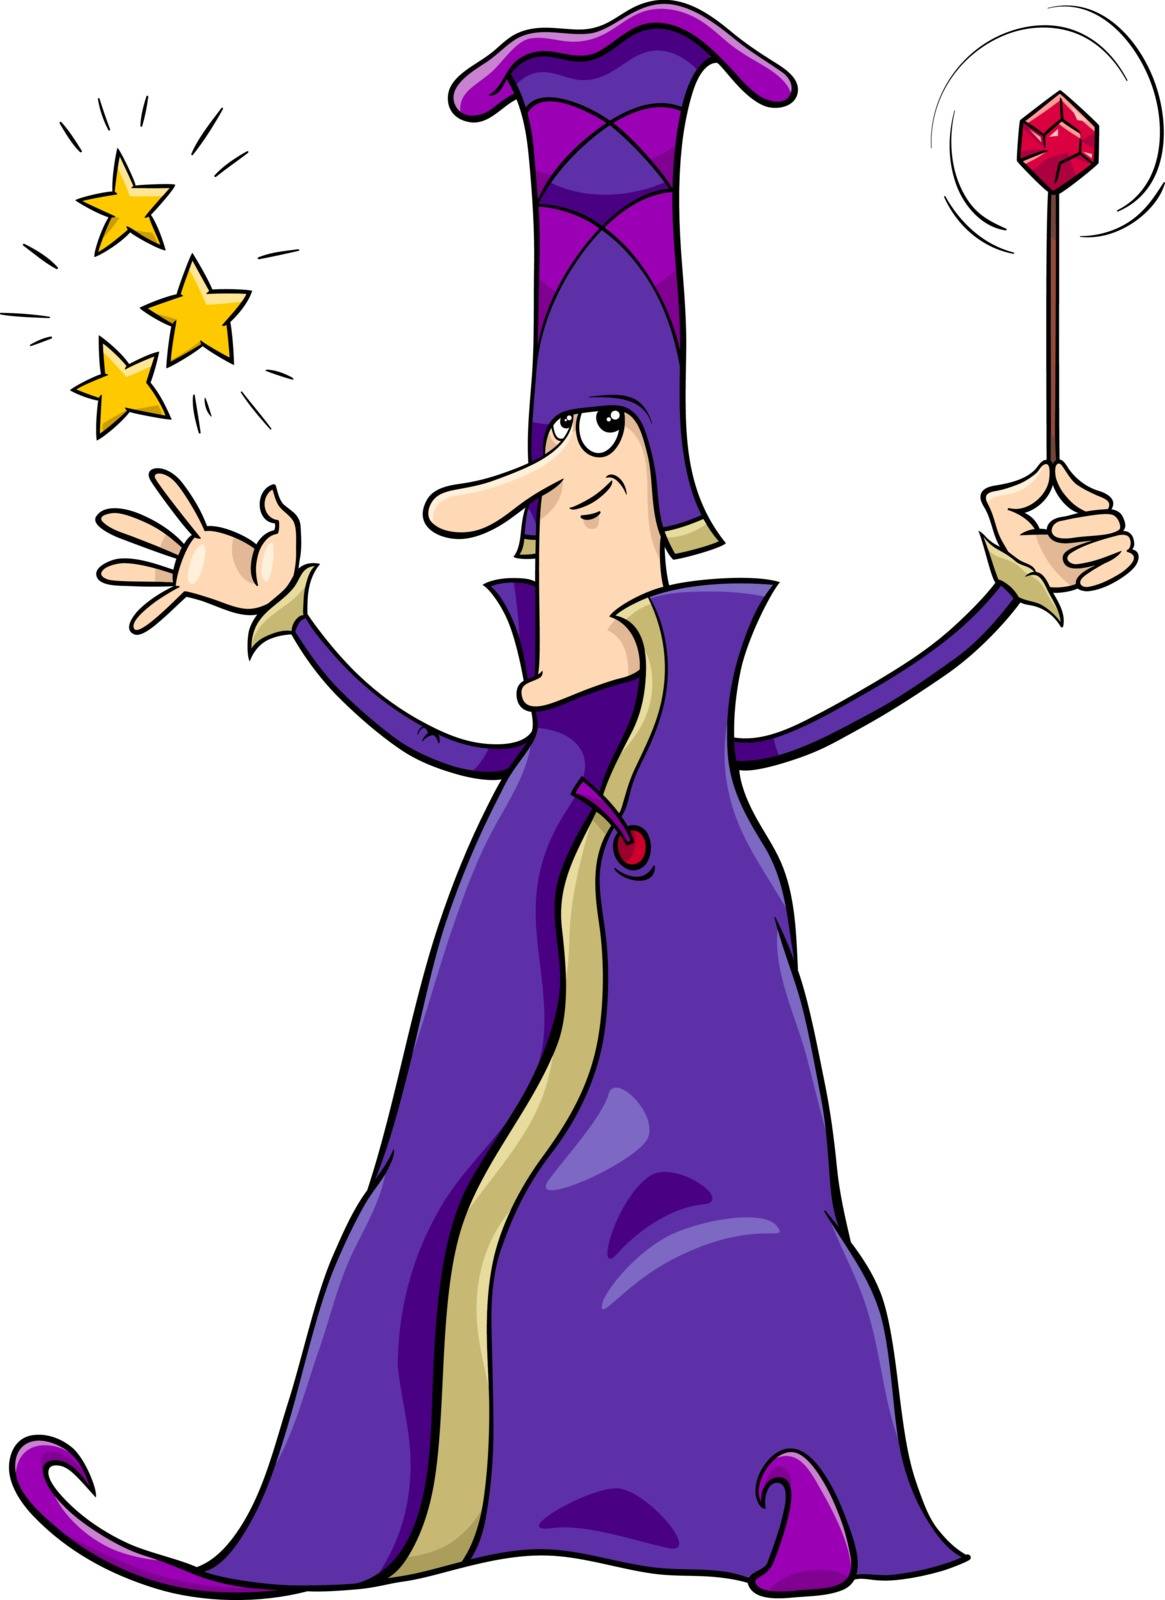 wizard character cartoon by izakowski